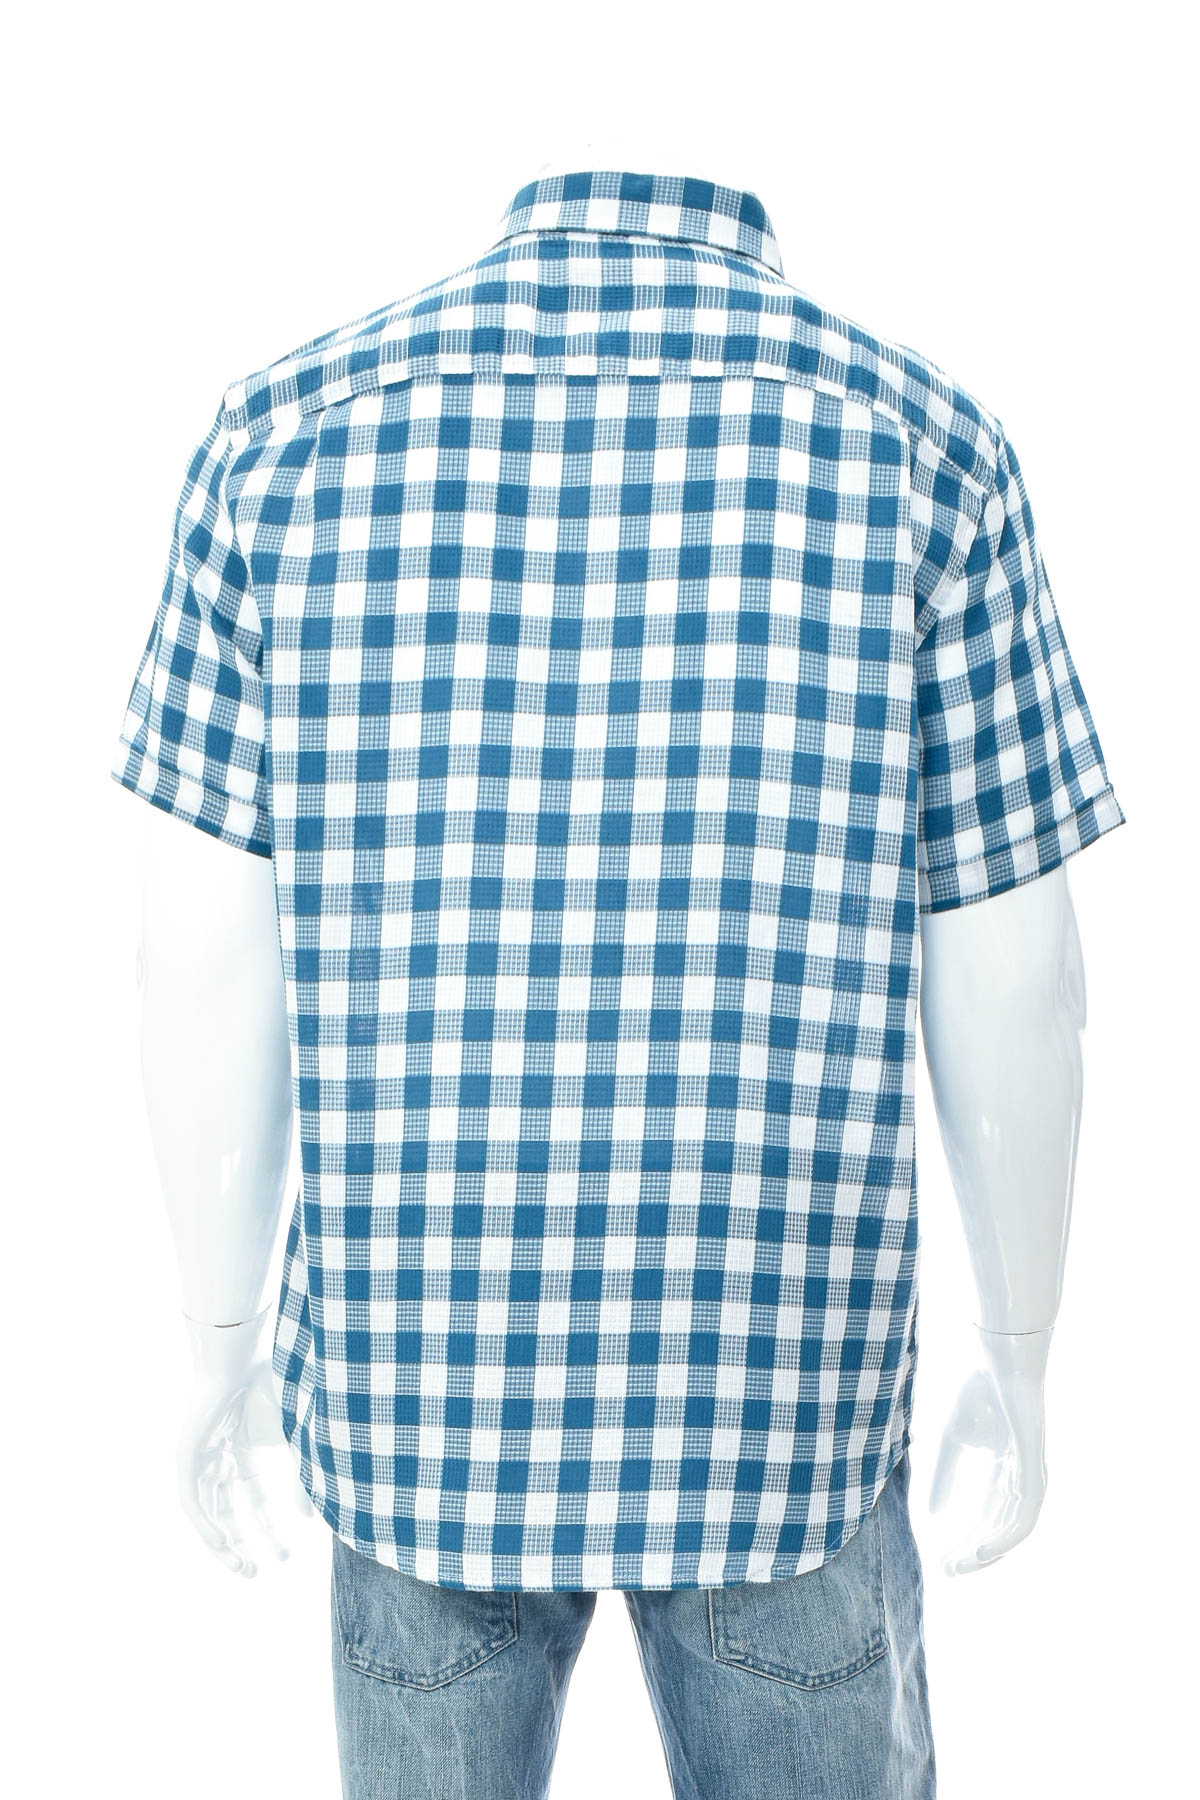 Ανδρικό πουκάμισο - LC Waikiki - 1